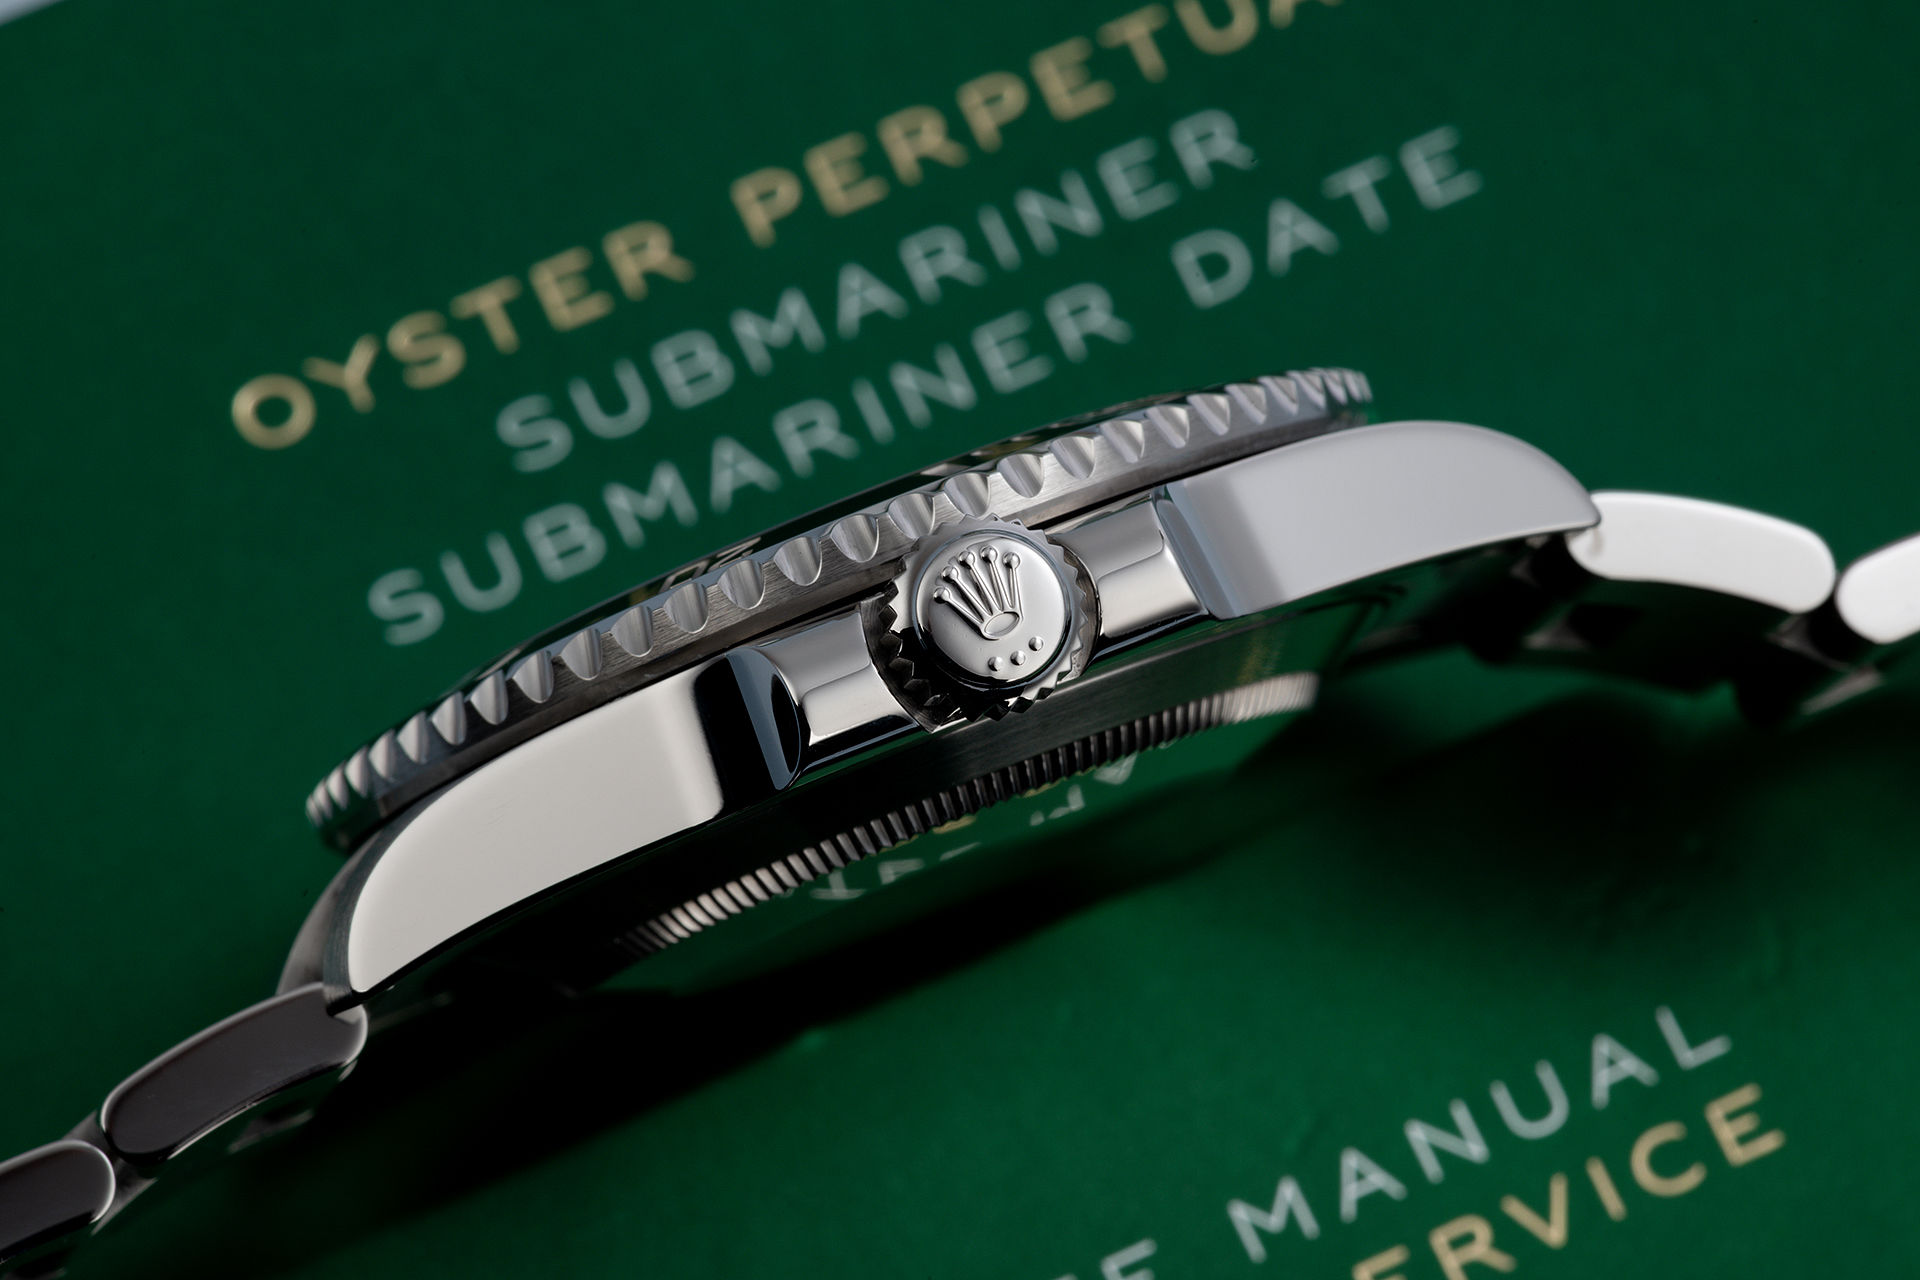 ref 114060 | Rolex Warranty to 2023 | Rolex Submariner 